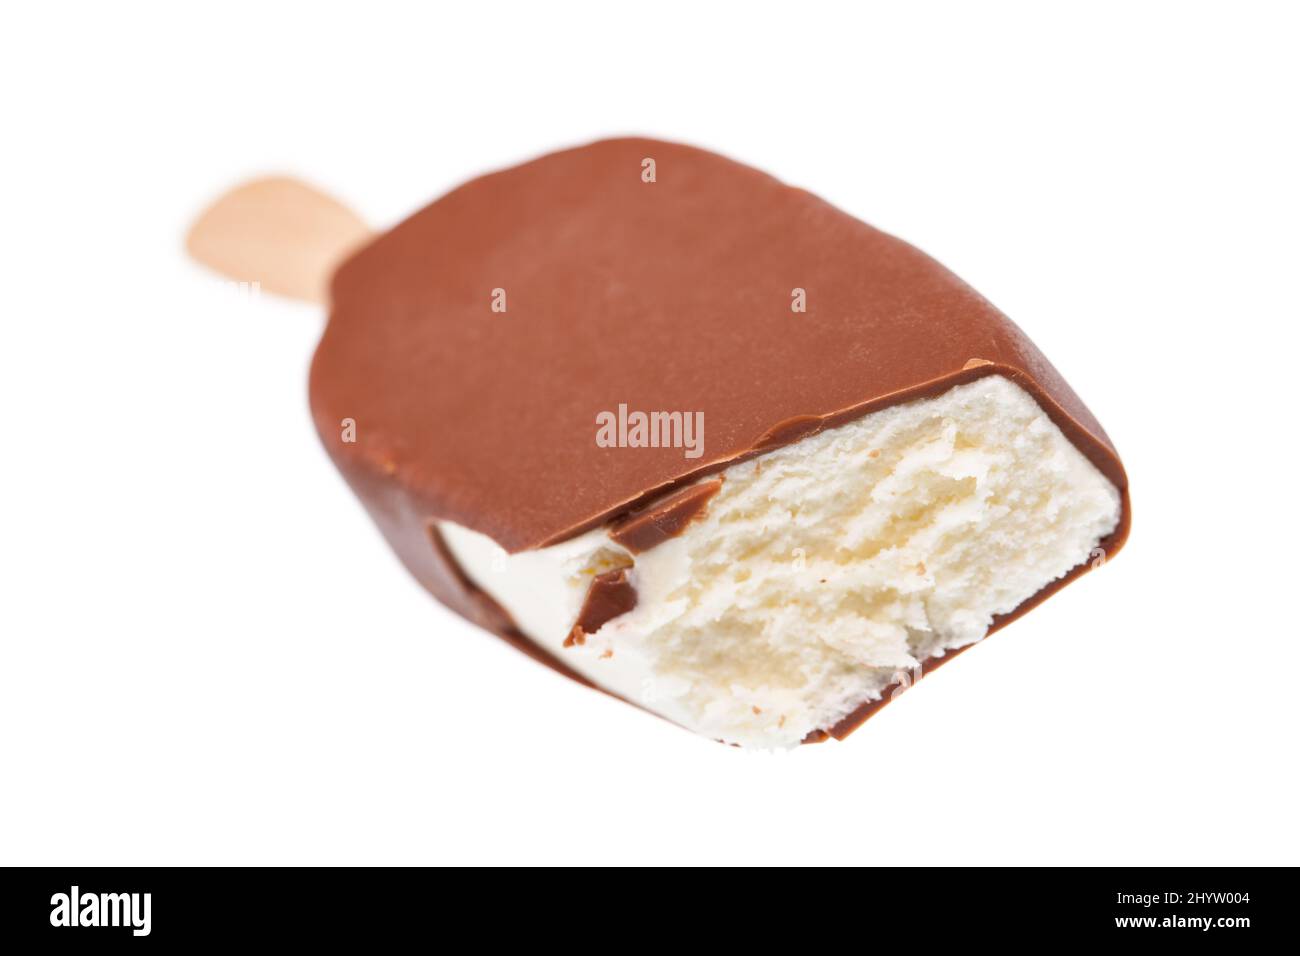 Mordedura helado de vainilla aislado en fondo blanco Foto de stock